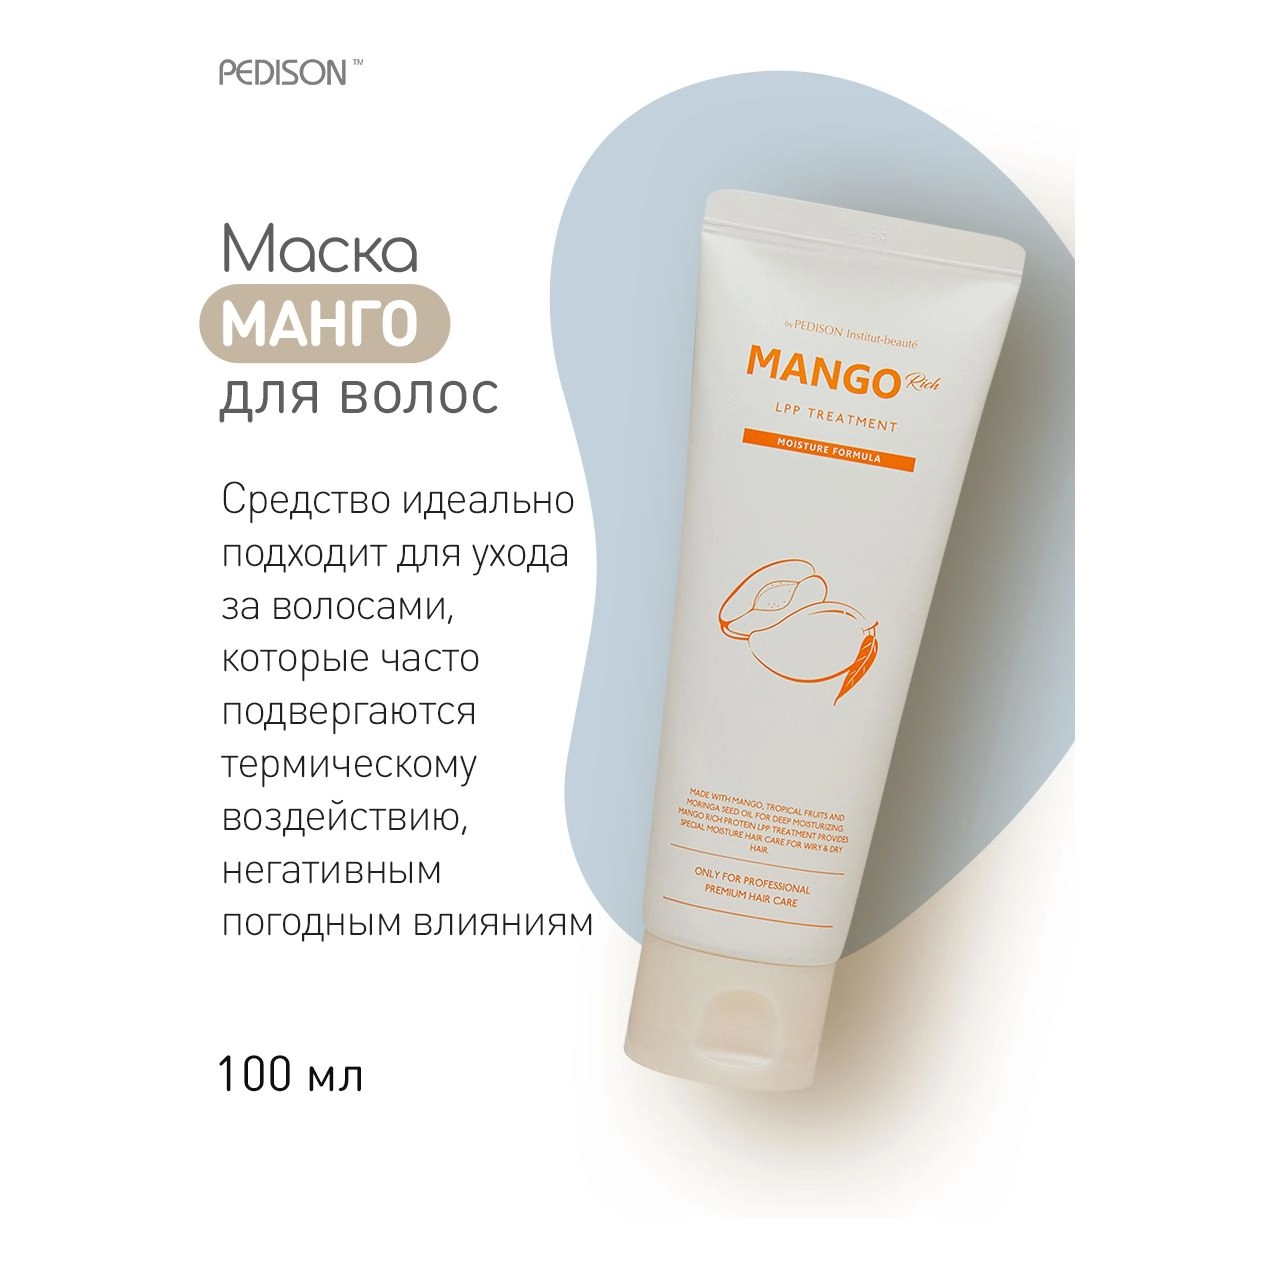 Маска для волос "Манго" - Pedison Institut-Beaute Mango Rich LPP Treatment, 100 мл - фото N4